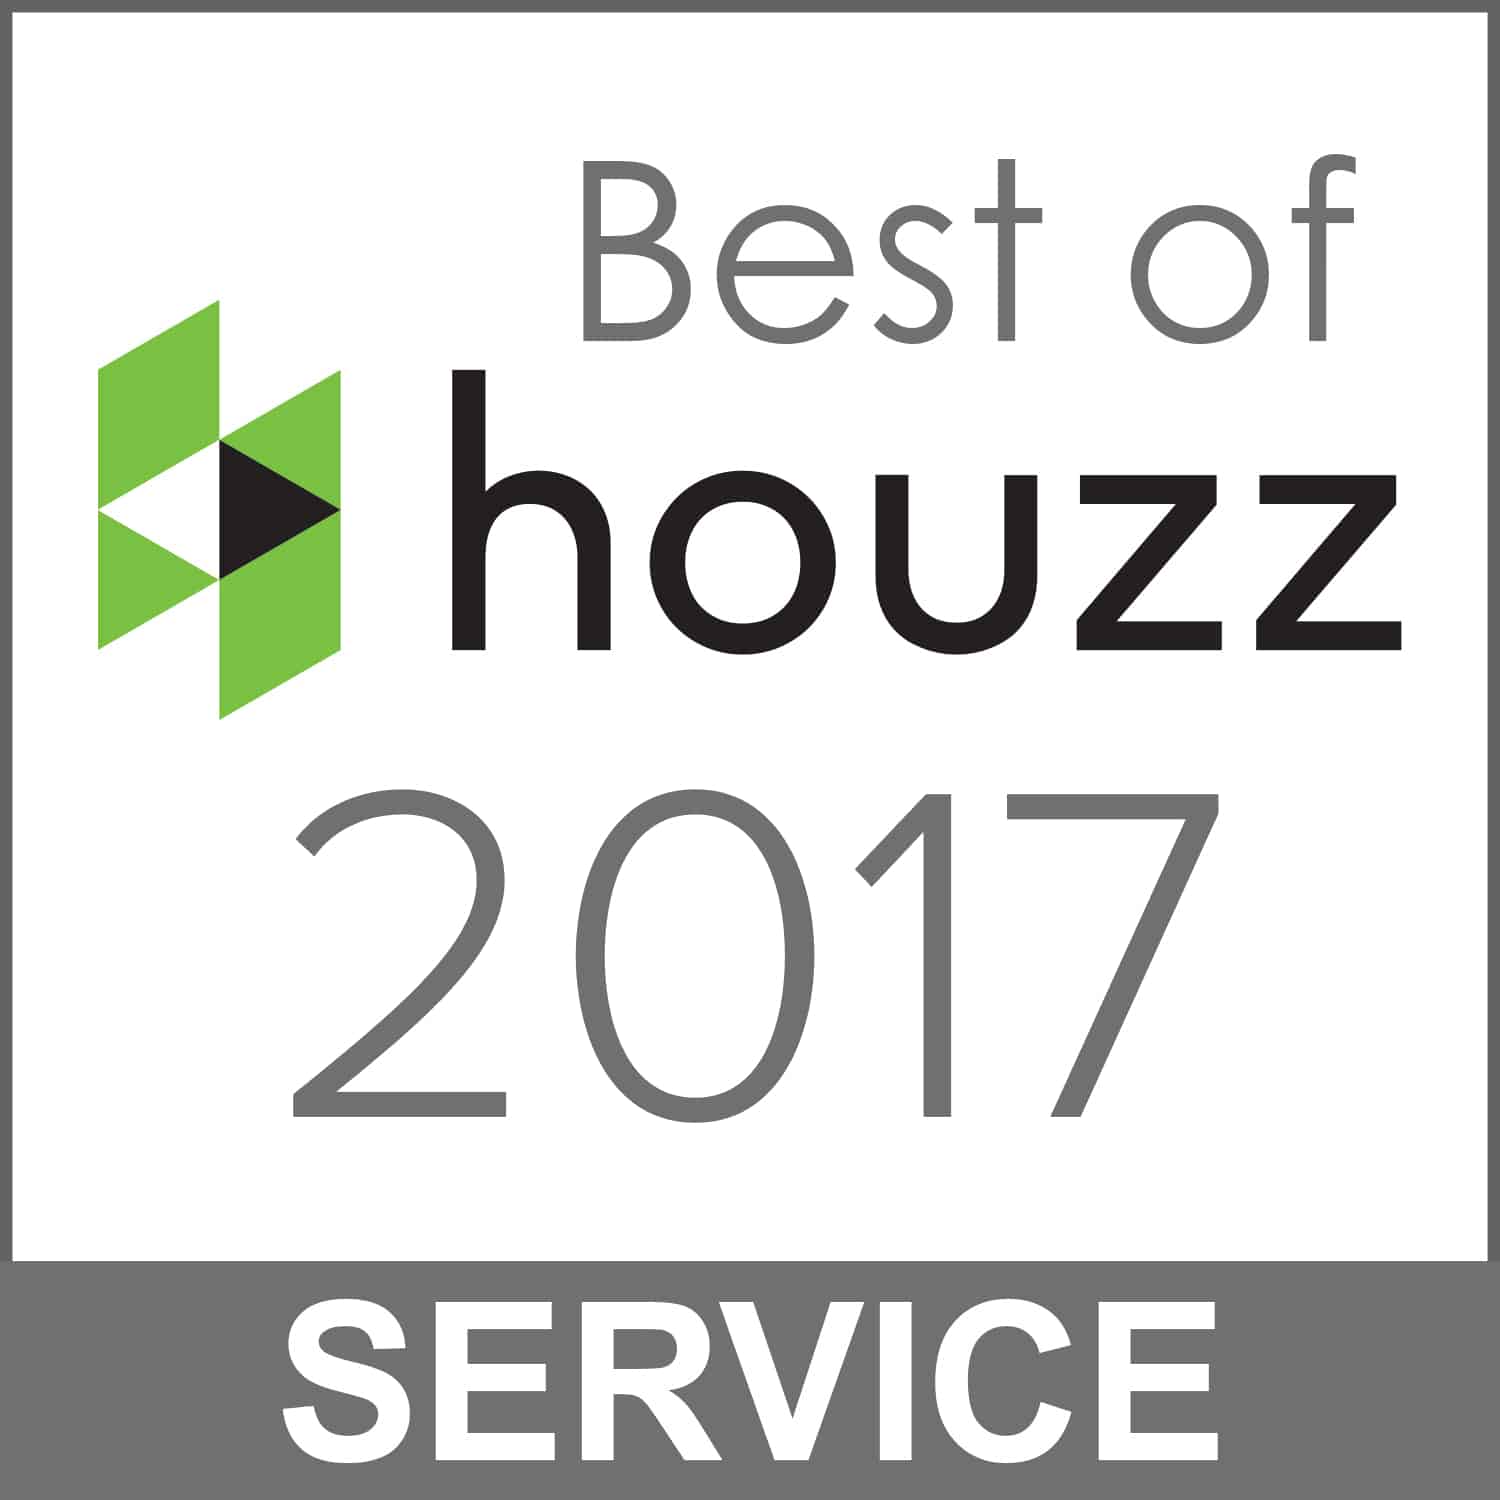 Best of houzz 2017 interior design service.